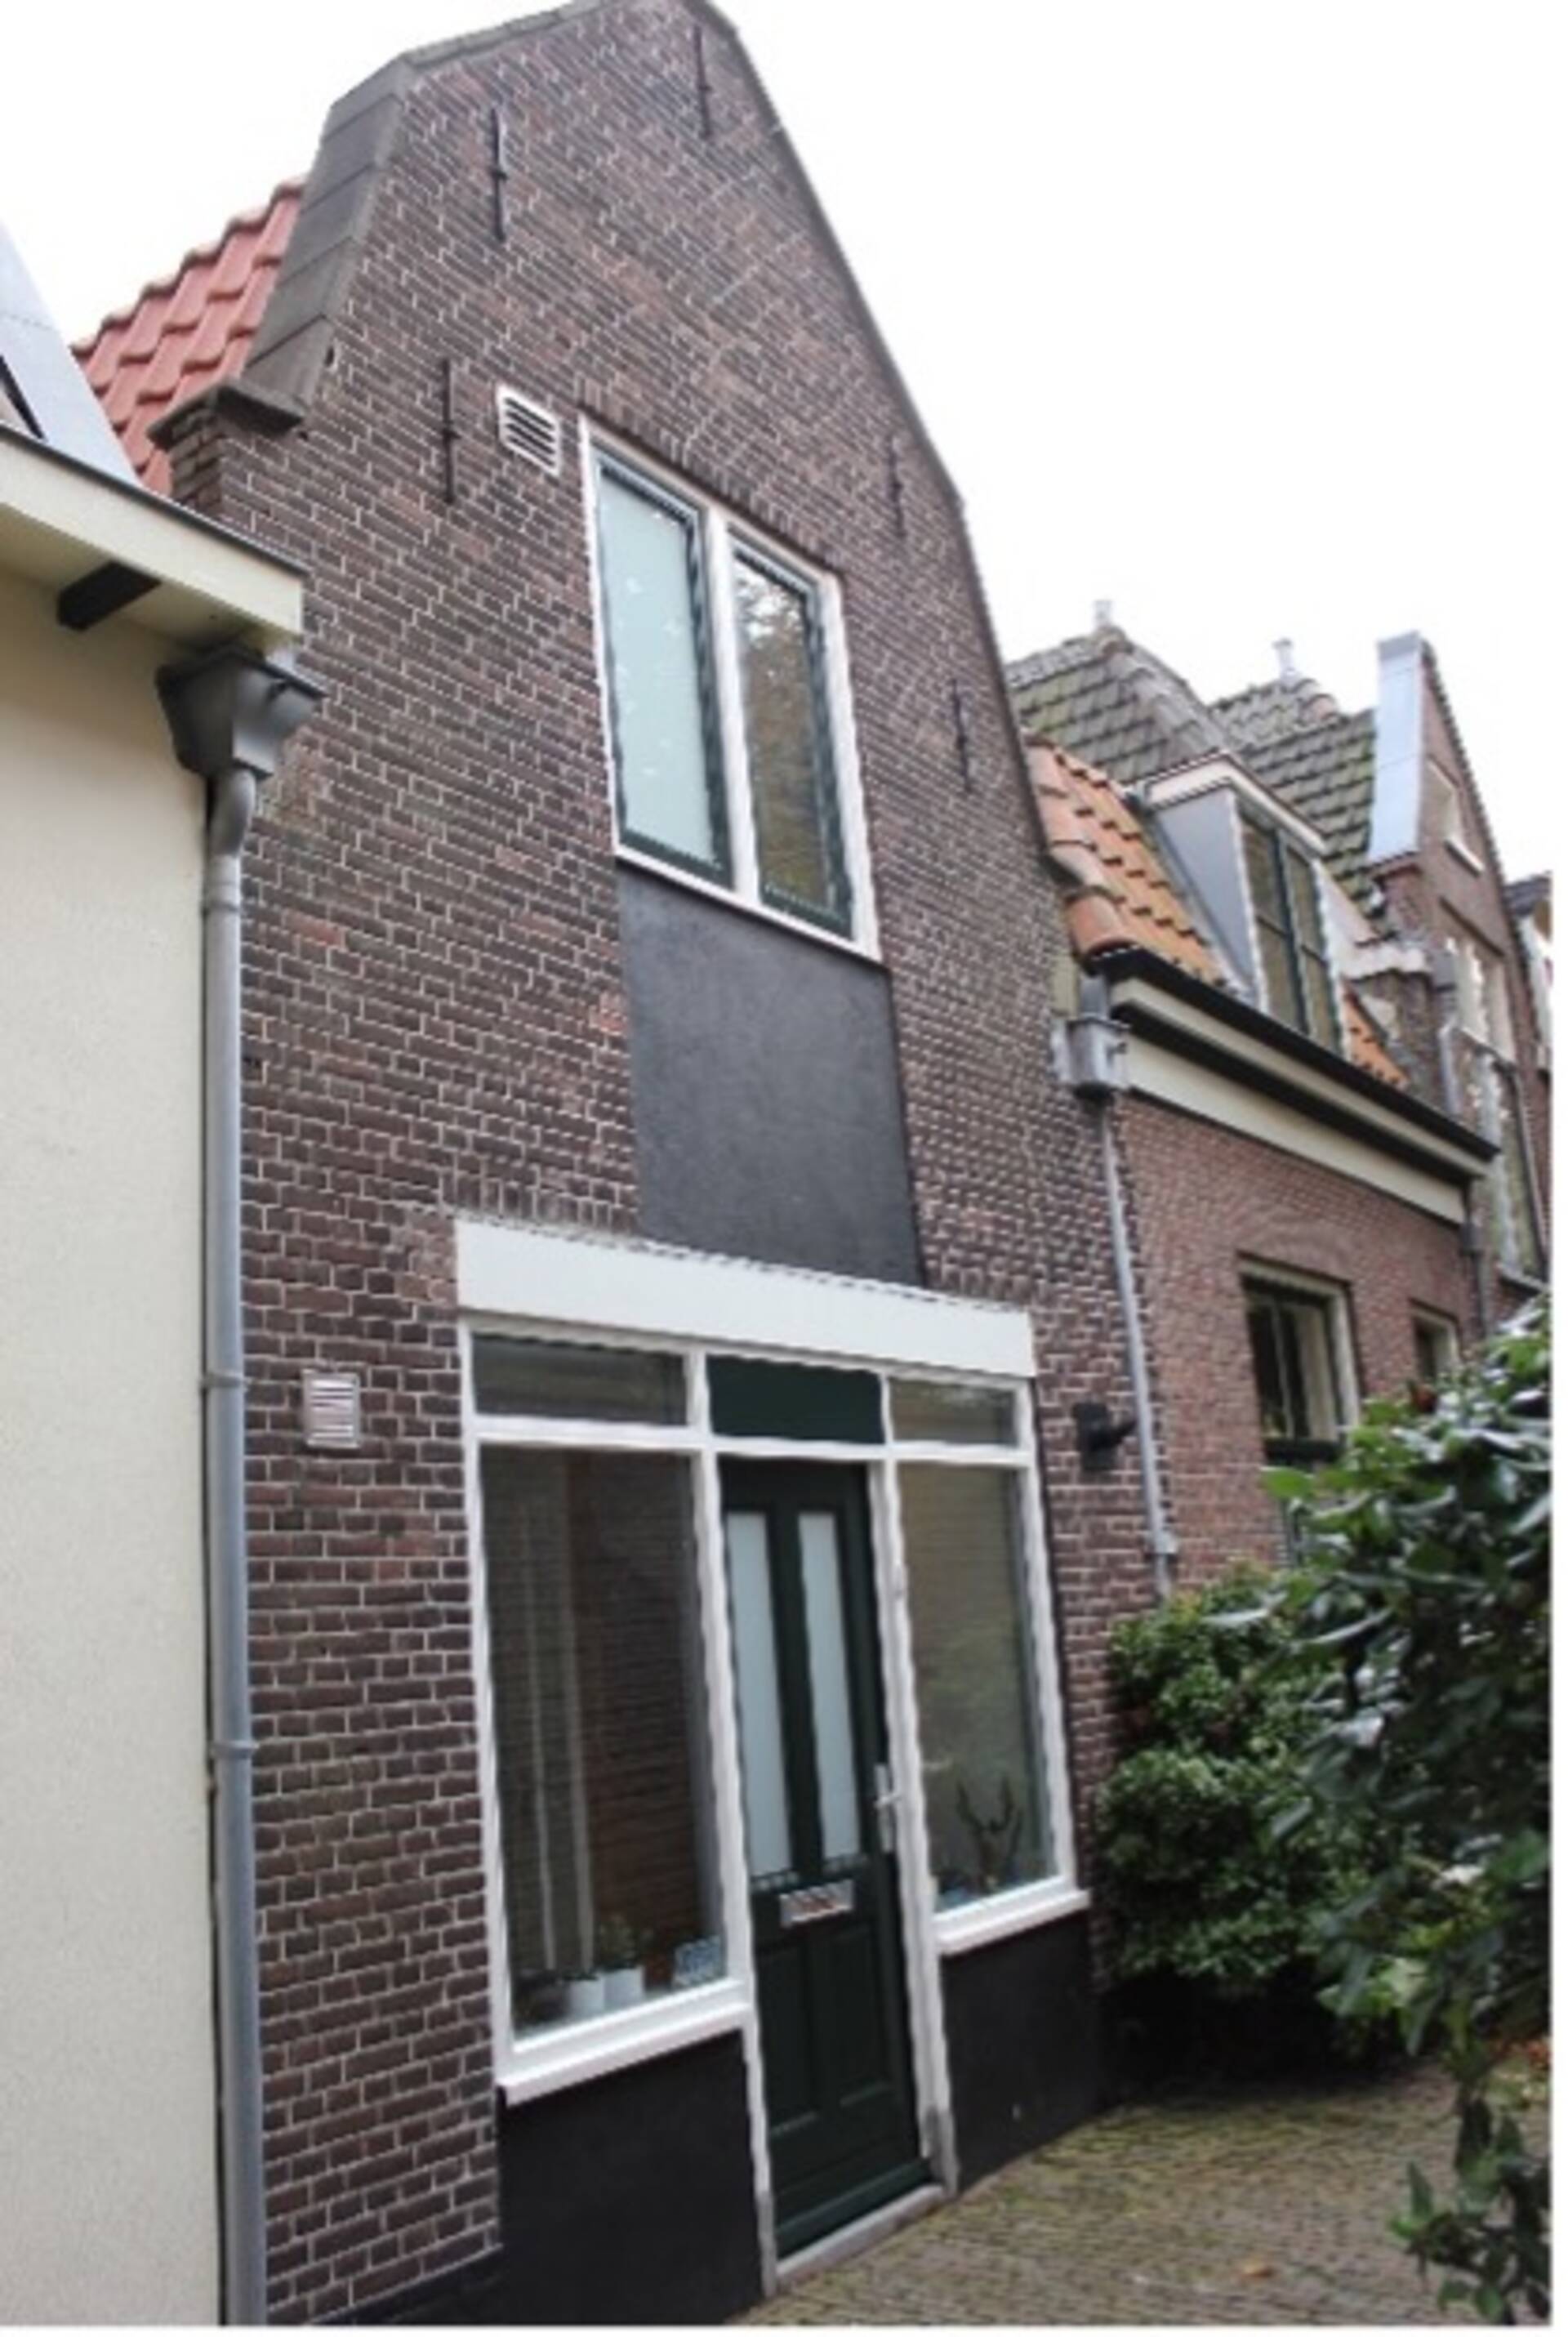 Koddesteeg Leiden